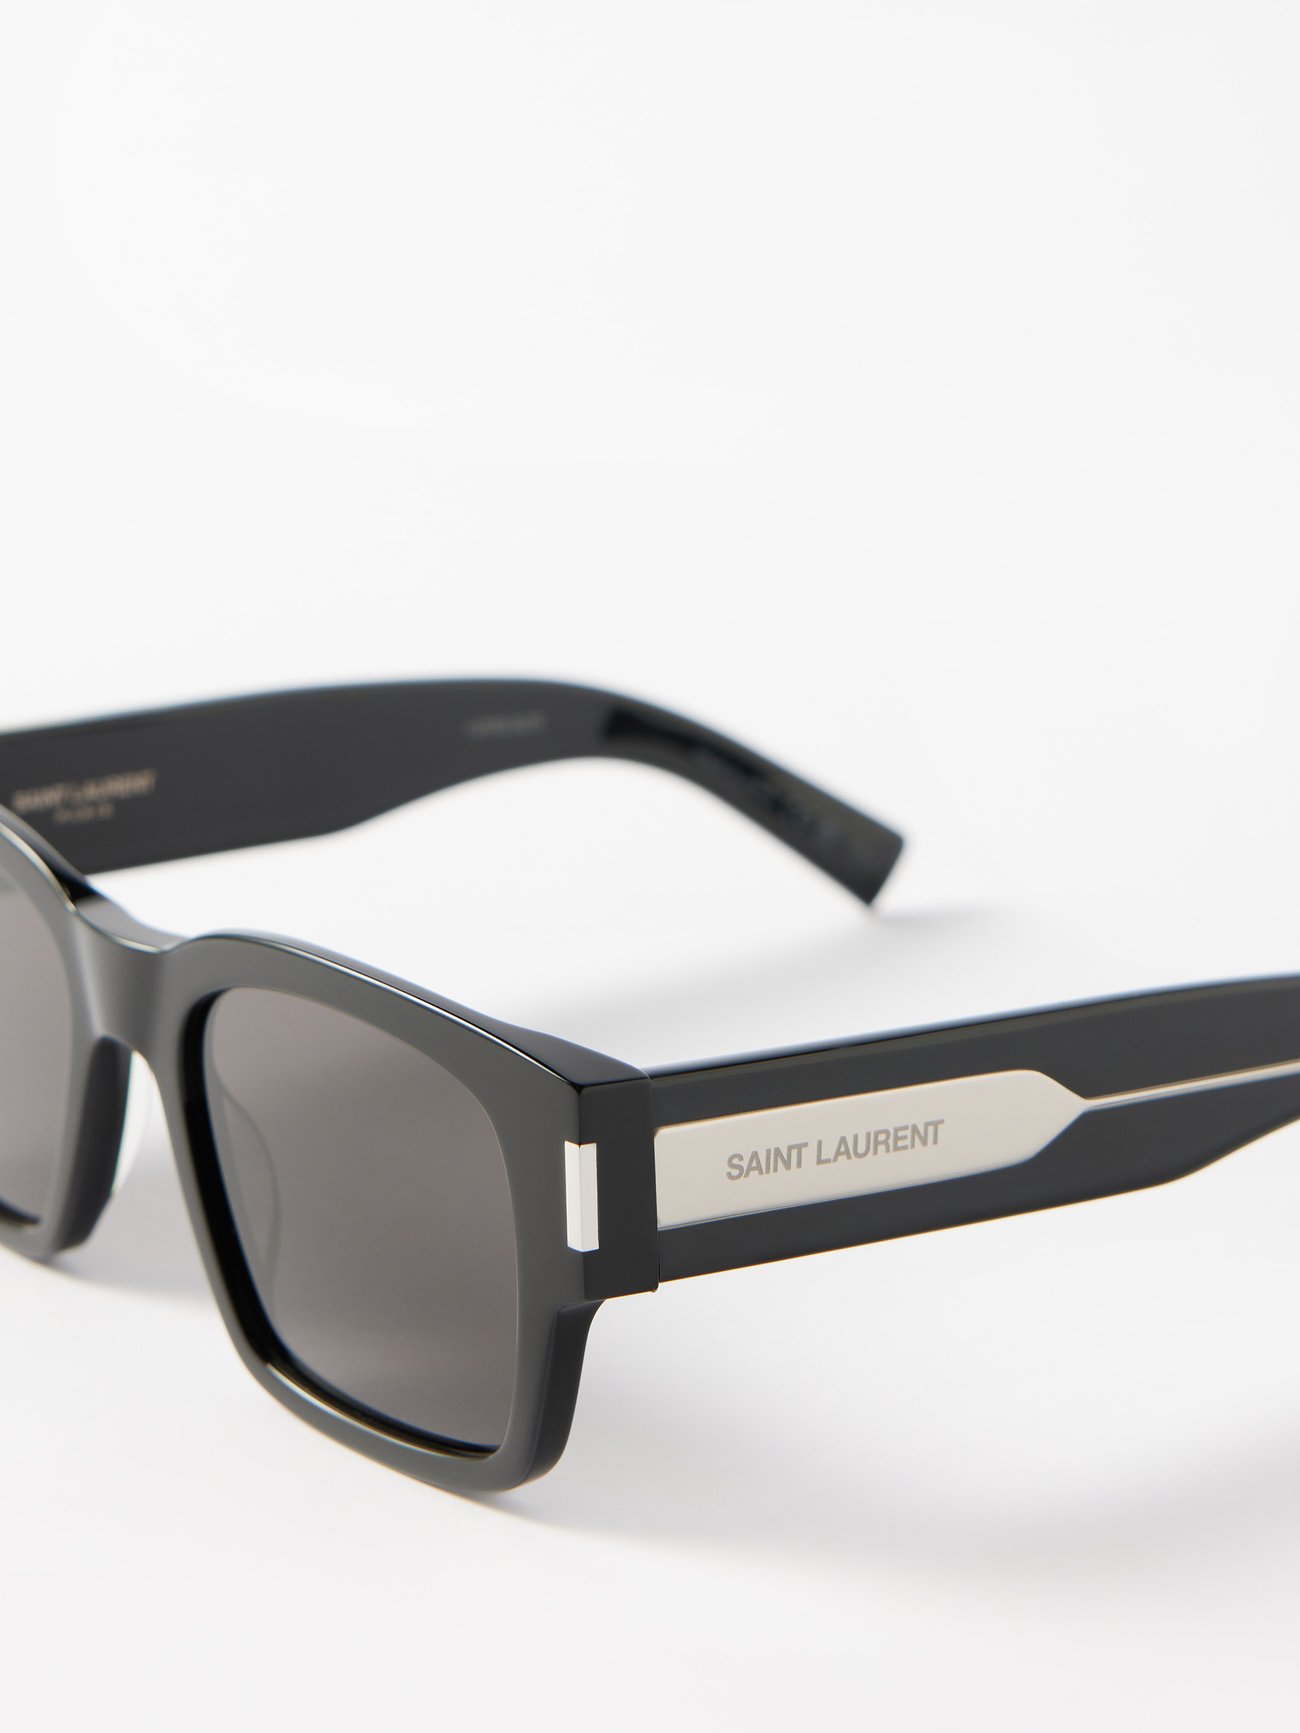 Black Square acetate sunglasses, Saint Laurent